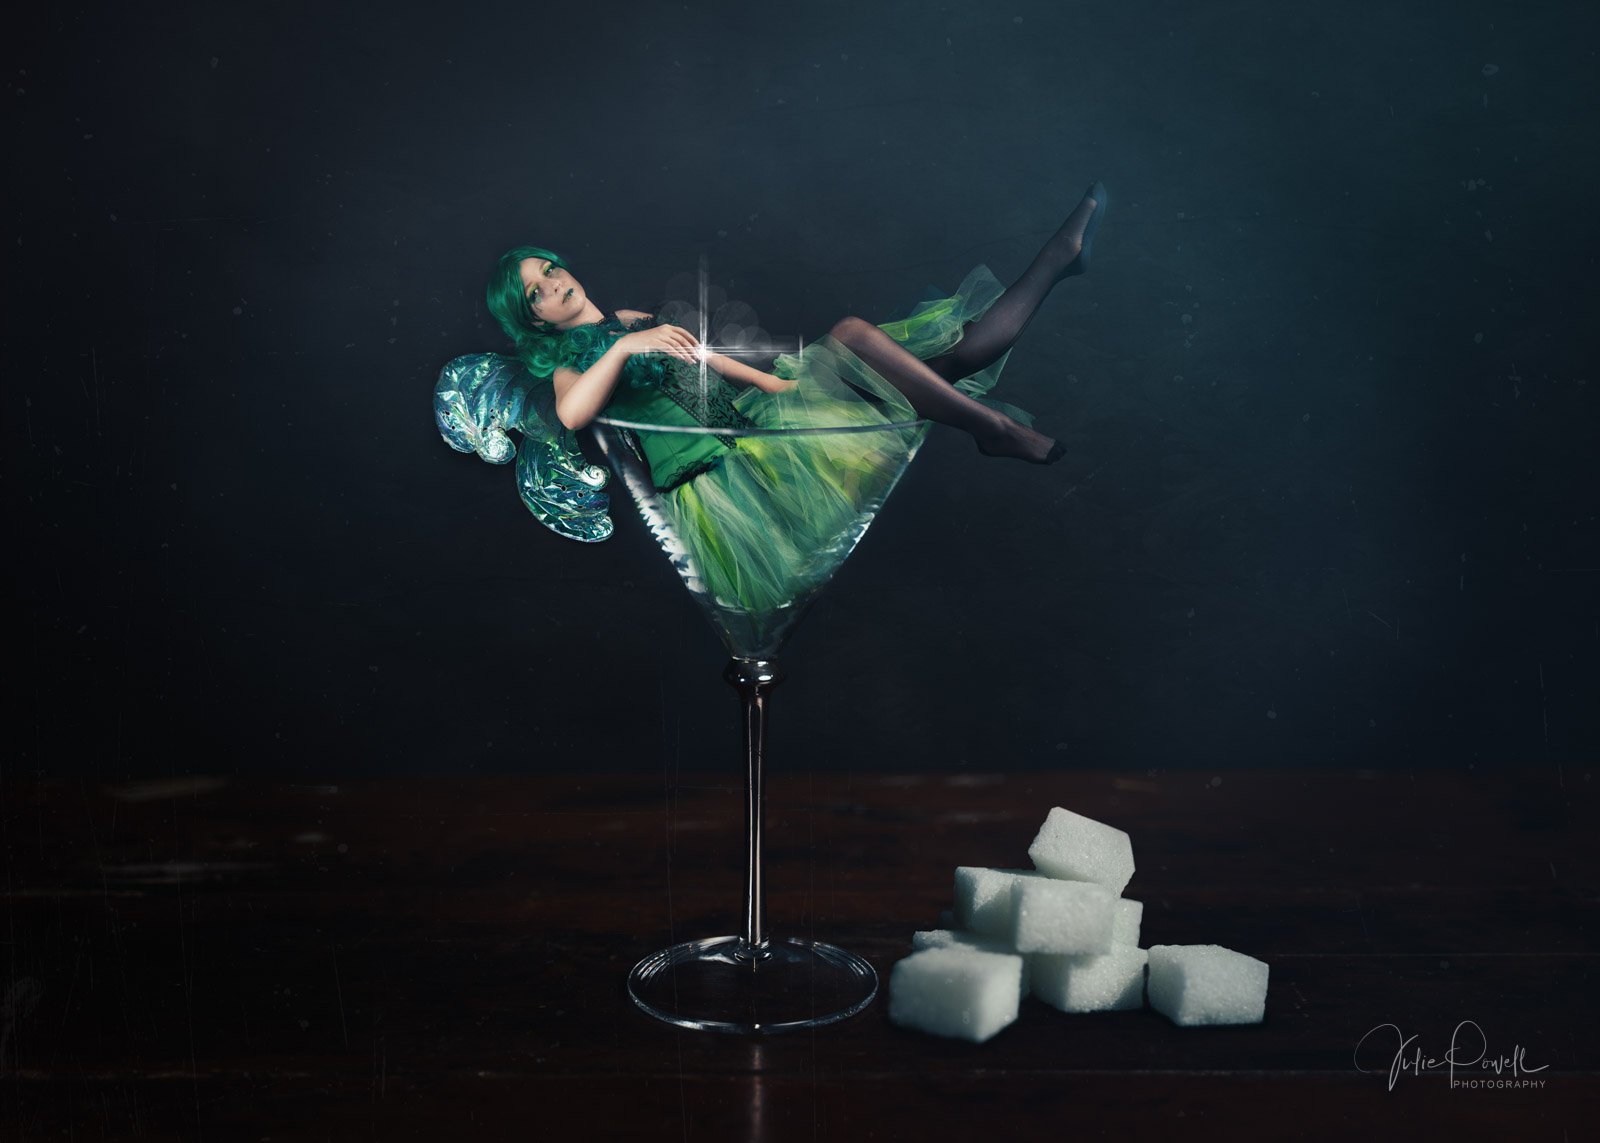 The Absinth Green Fairy